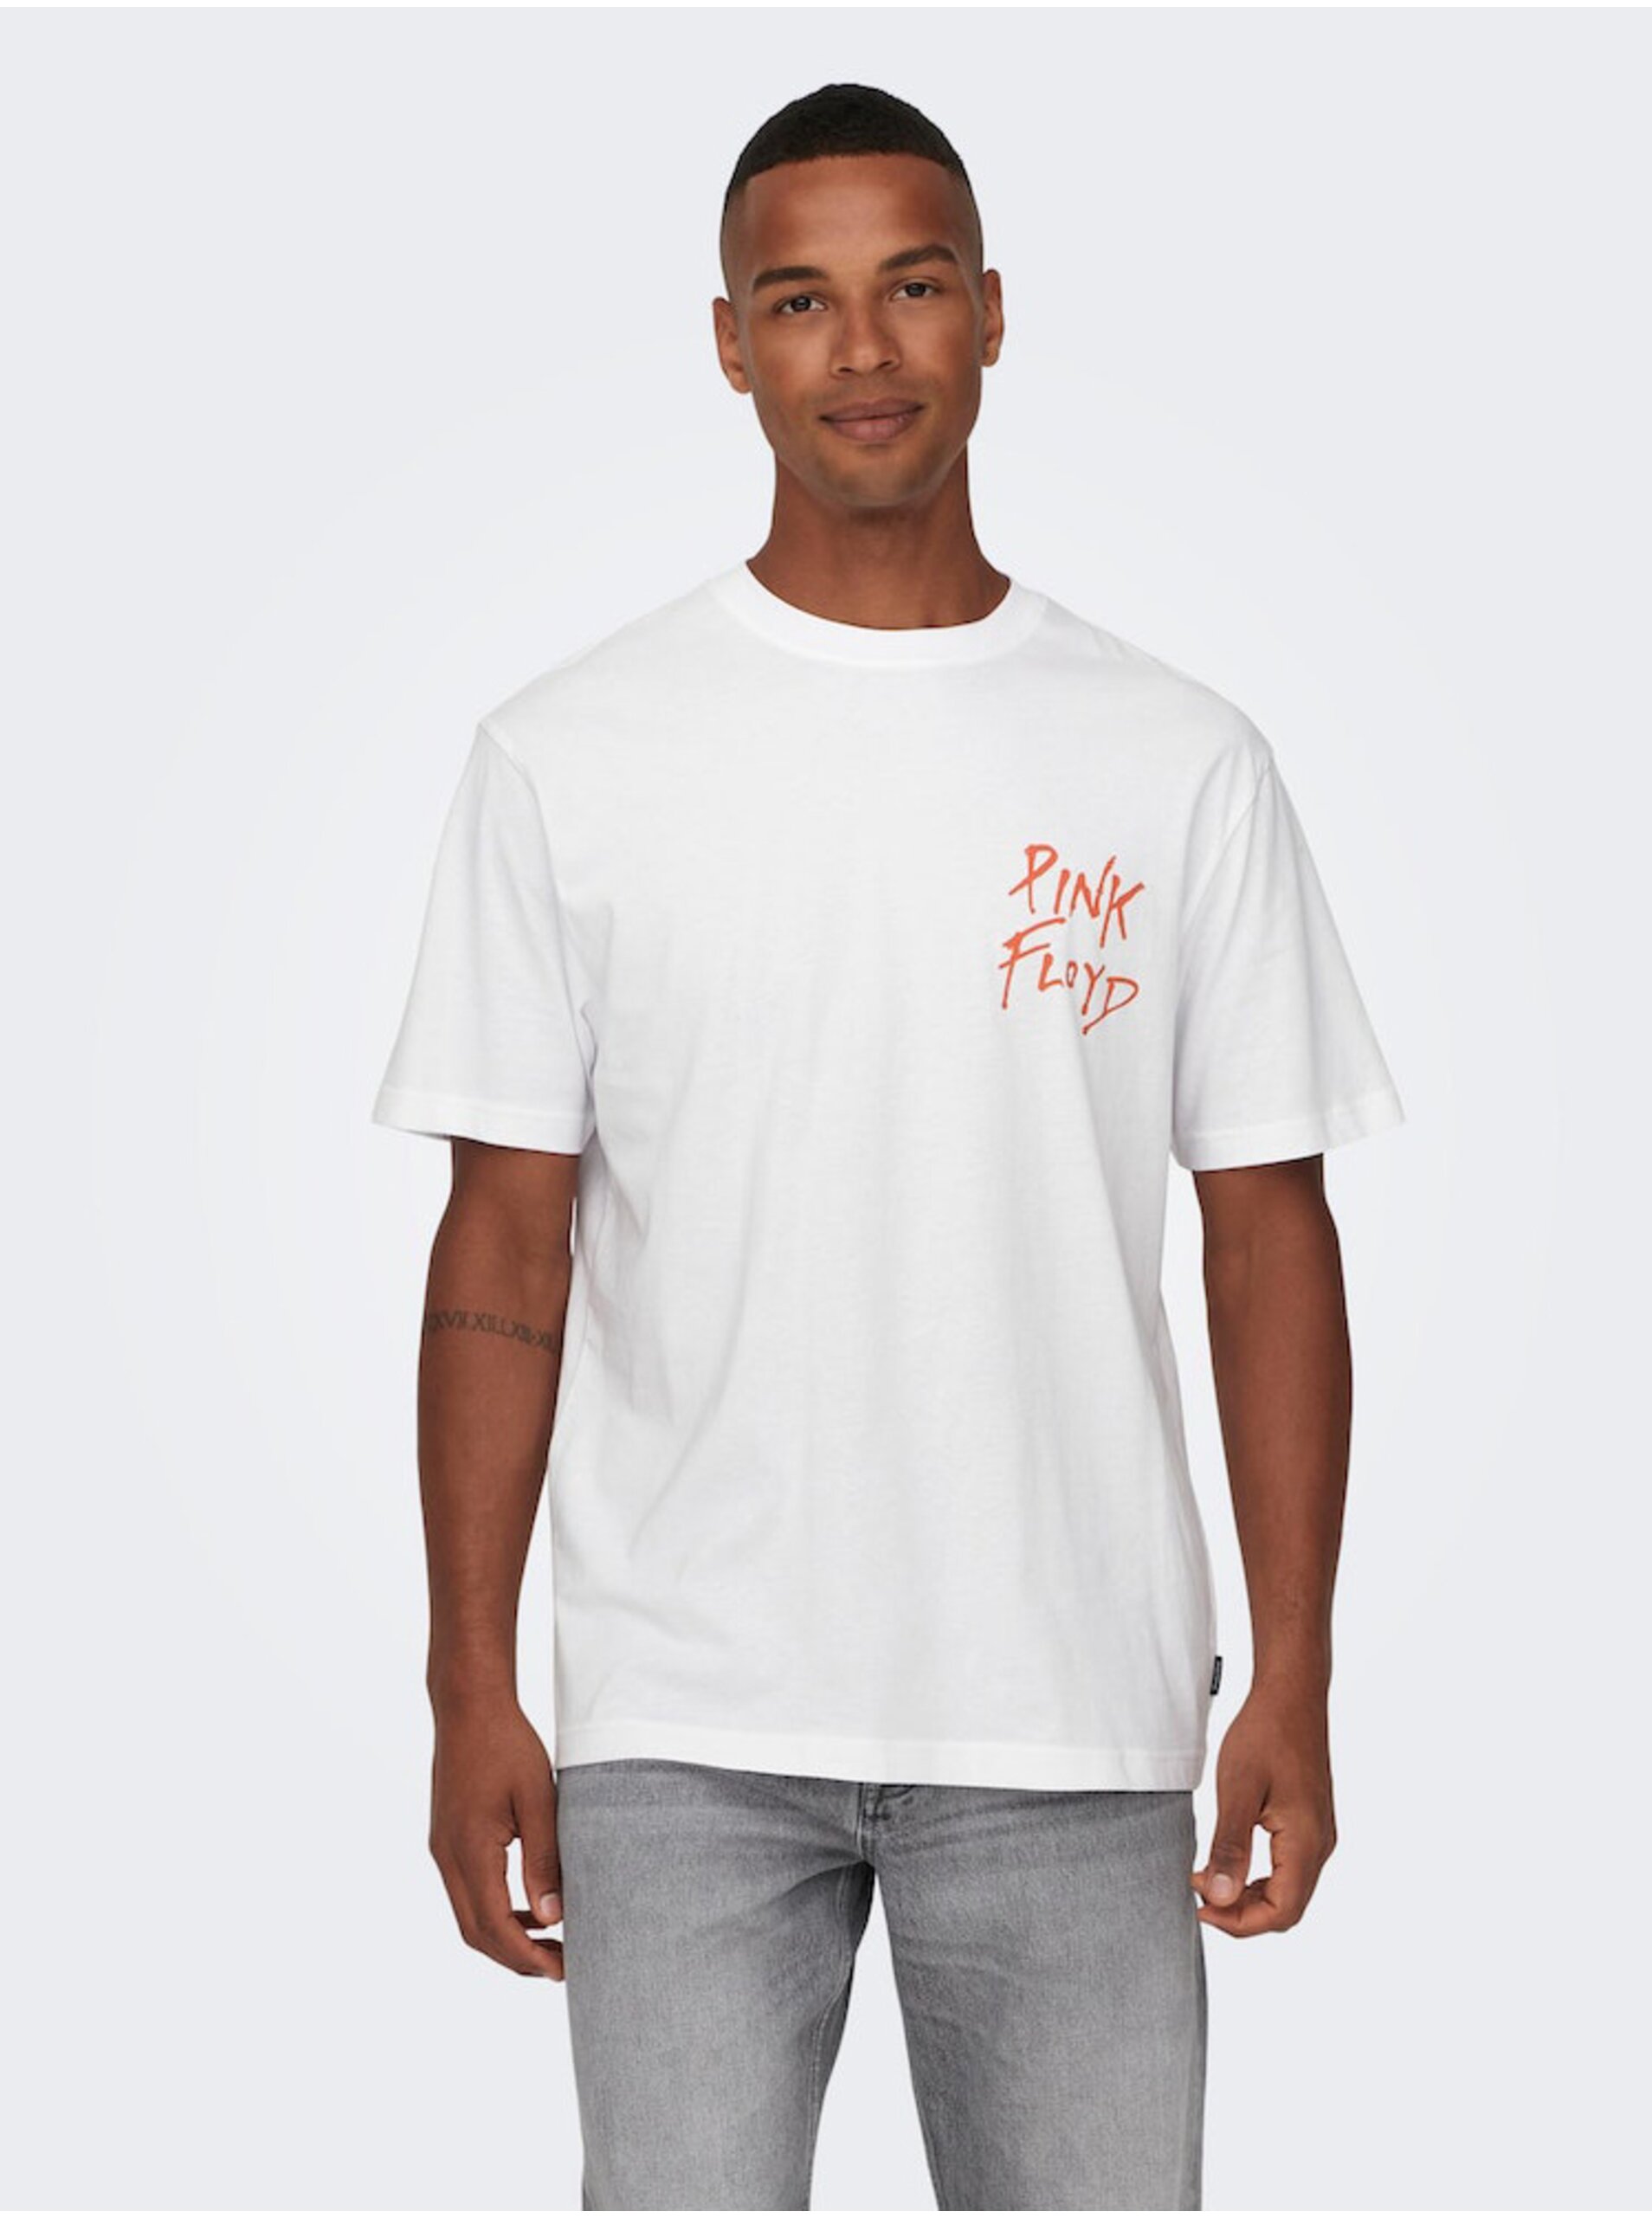 Lacno Biele pánske tričko s krátkym rukávom ONLY & SONS Pink Floyd